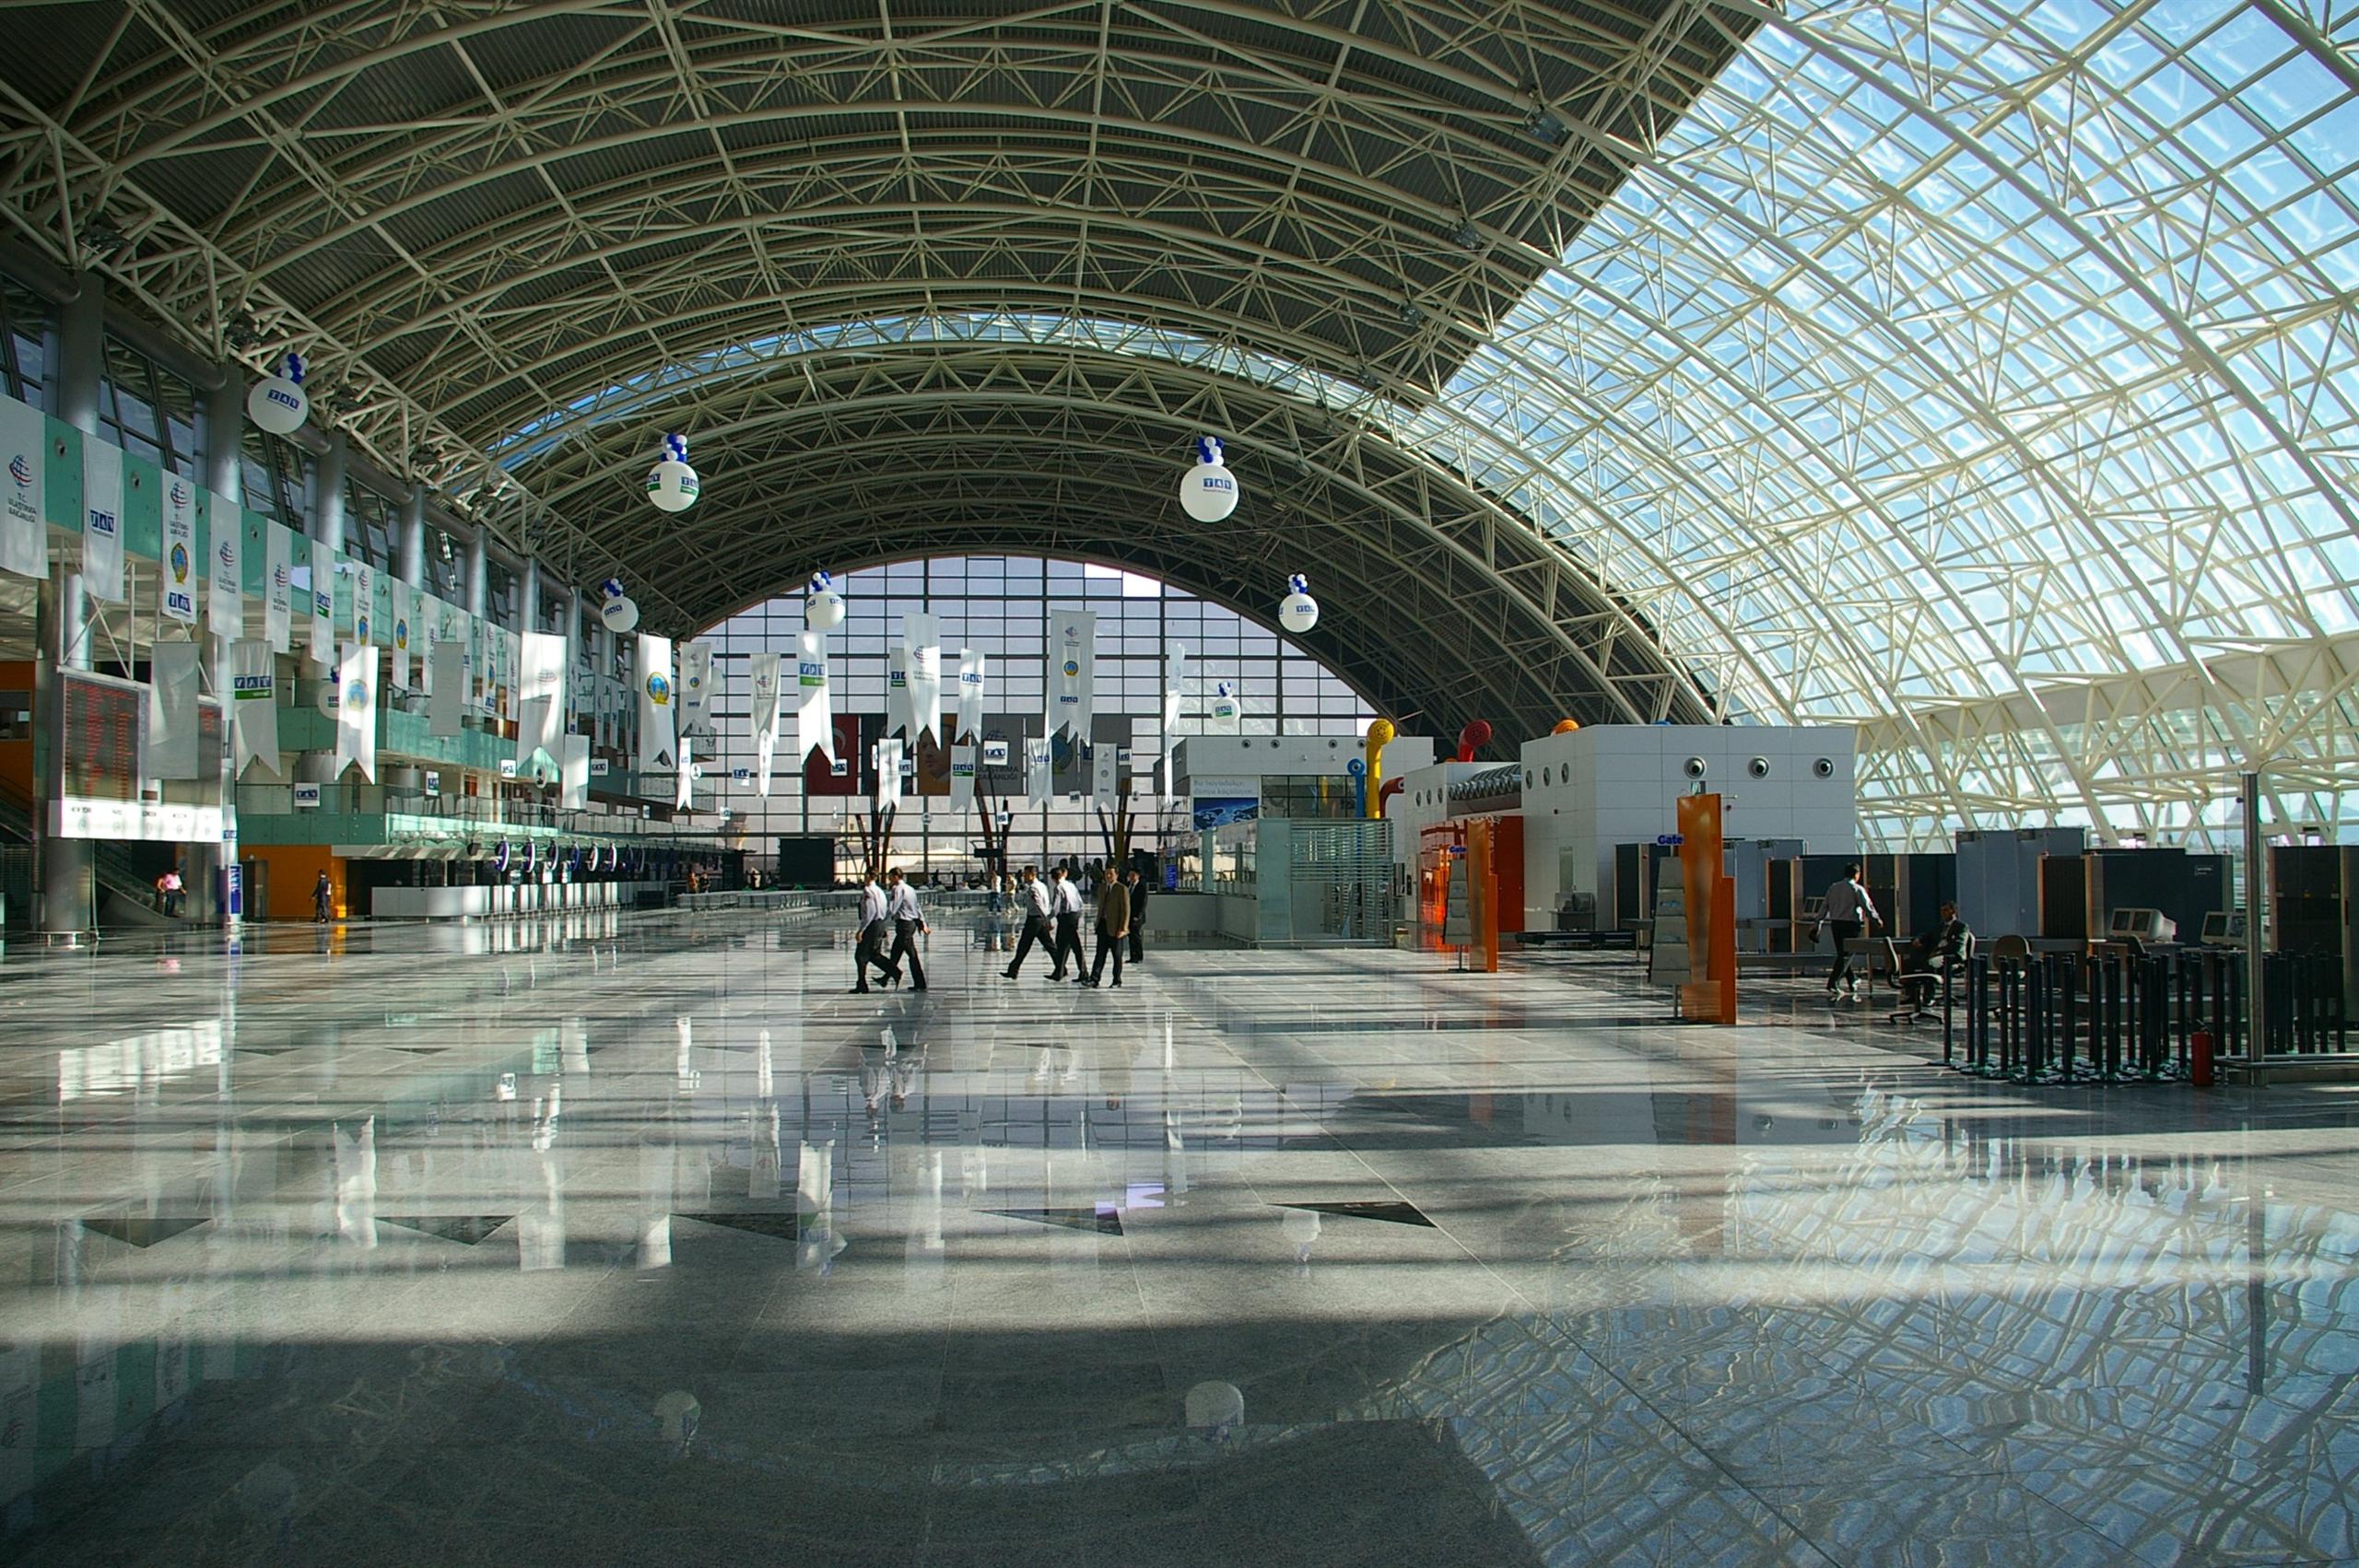 Inside the terminal at Izmir Airport